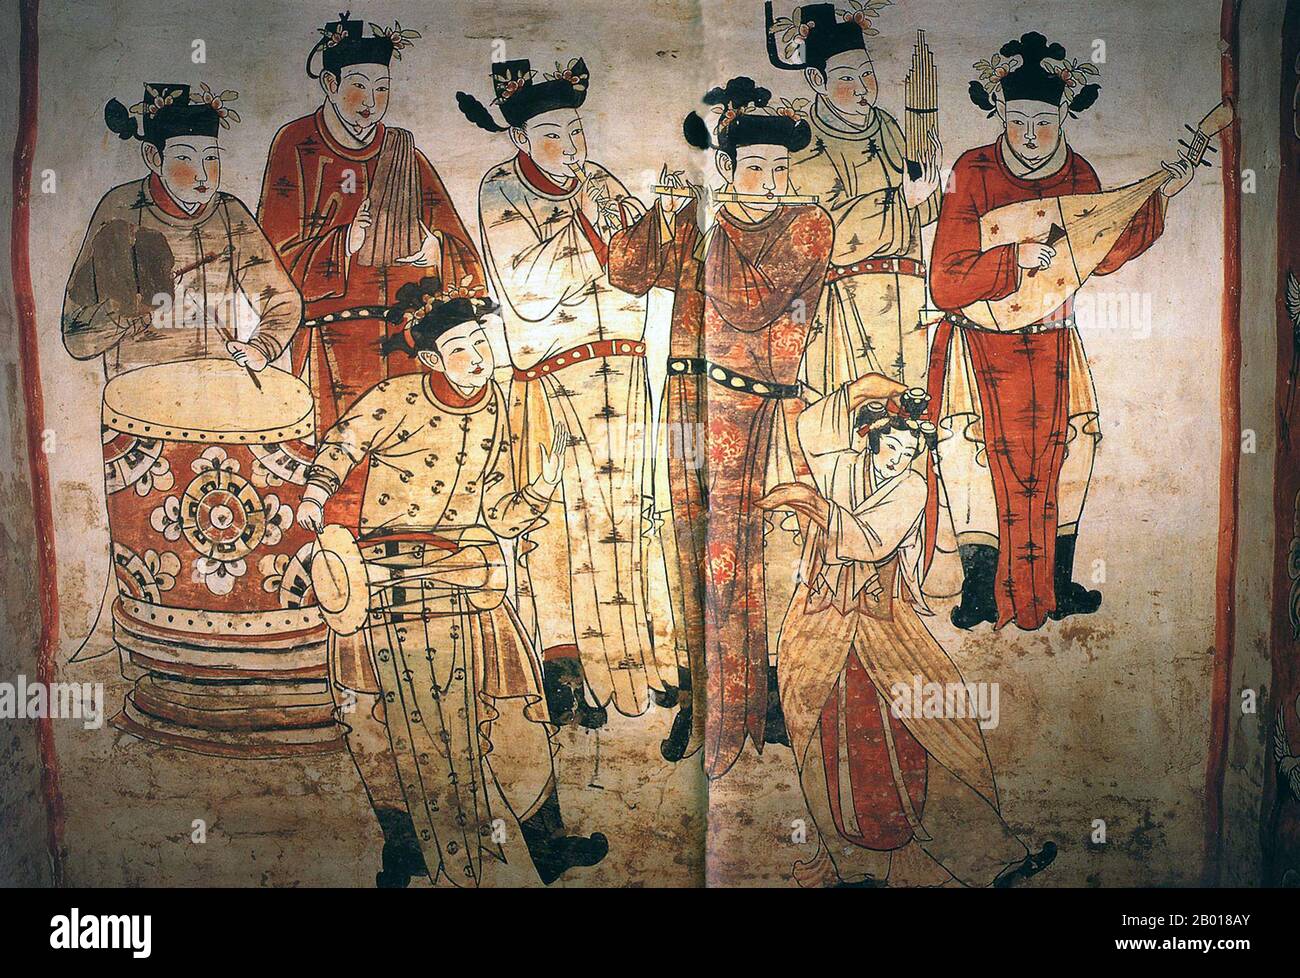 Cina: Un gruppo di musicisti e una donna che balla. Murale nella tomba di Zhang Kuangzheng, Xuanhua, Hebei, Dinastia Liao (1093-1117). La dinastia di Liao, conosciuta anche come l'Impero Khitan, era uno stato che dominava le regioni di Manciuria, Mongolia, e parti della Cina settentrionale propriamente detta. Fu fondata dal clan Yelü del popolo Khitano nello stesso anno in cui la dinastia Tang crollò (907), anche se il suo primo sovrano, Yelü Abaoji (Yaruud Ambagai Khan), non dichiarò un nome di epoca fino al 916. Foto Stock